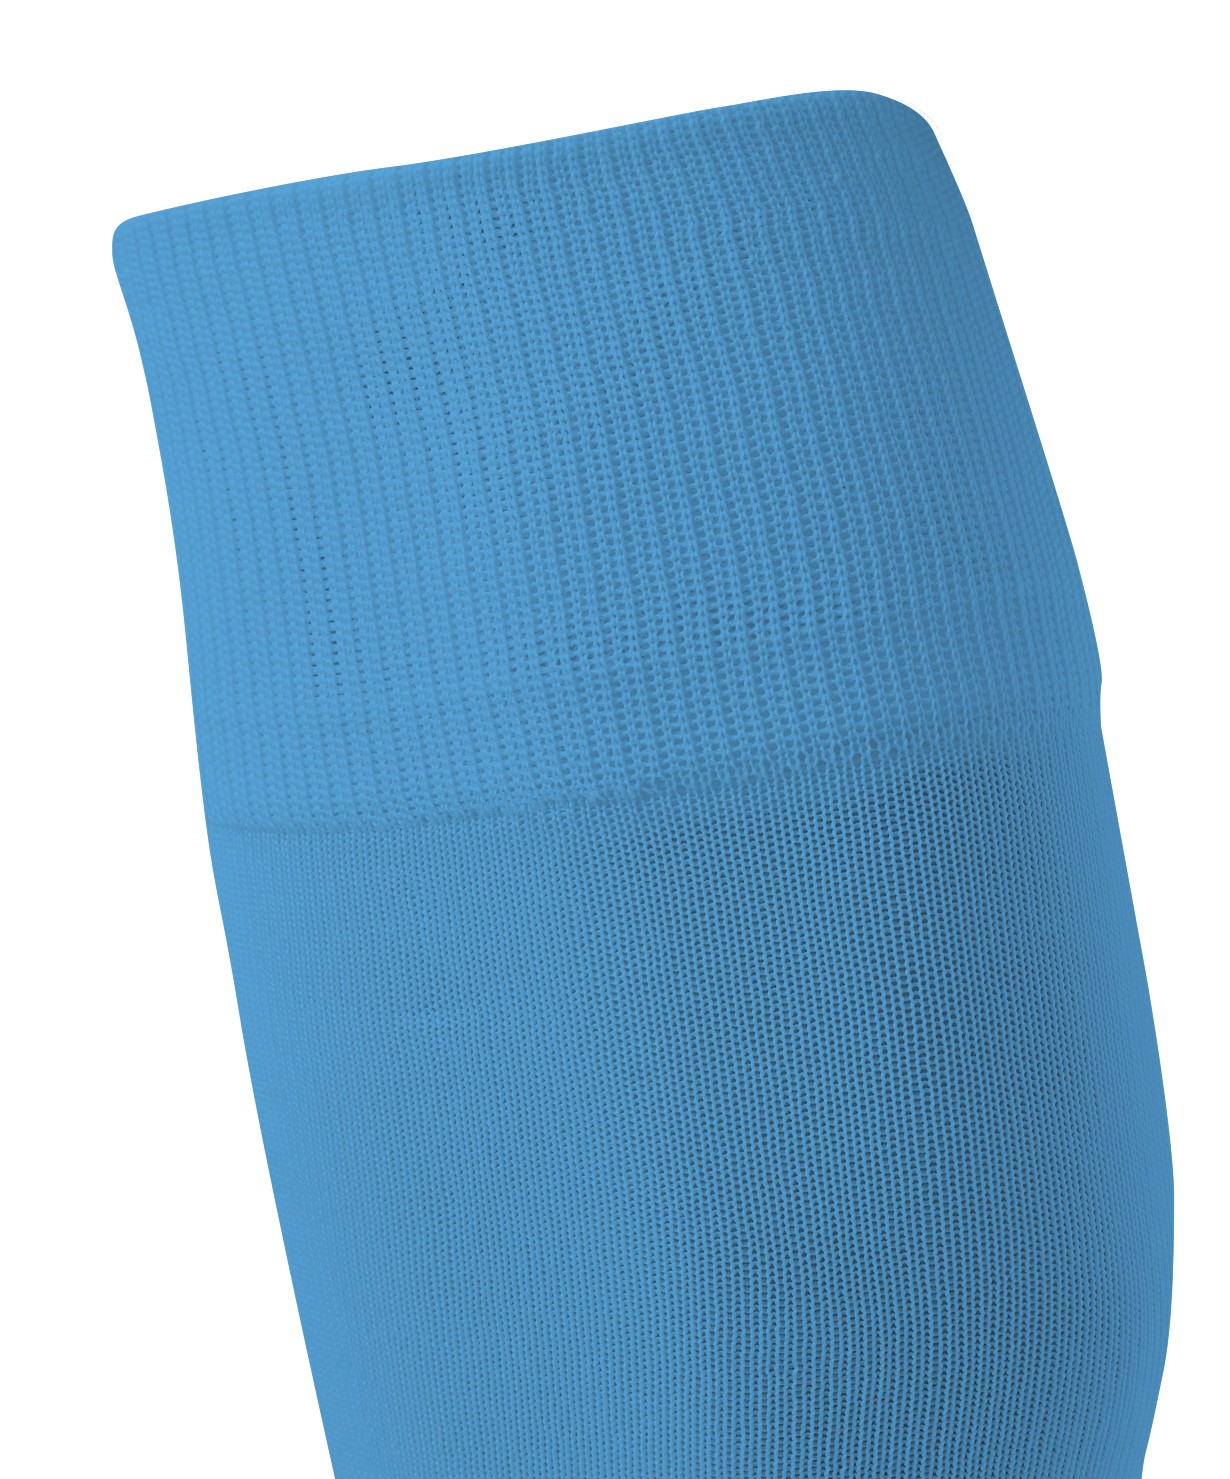 Гетры футбольные Jogel Camp basic socks, голубой/белый 1230_1479